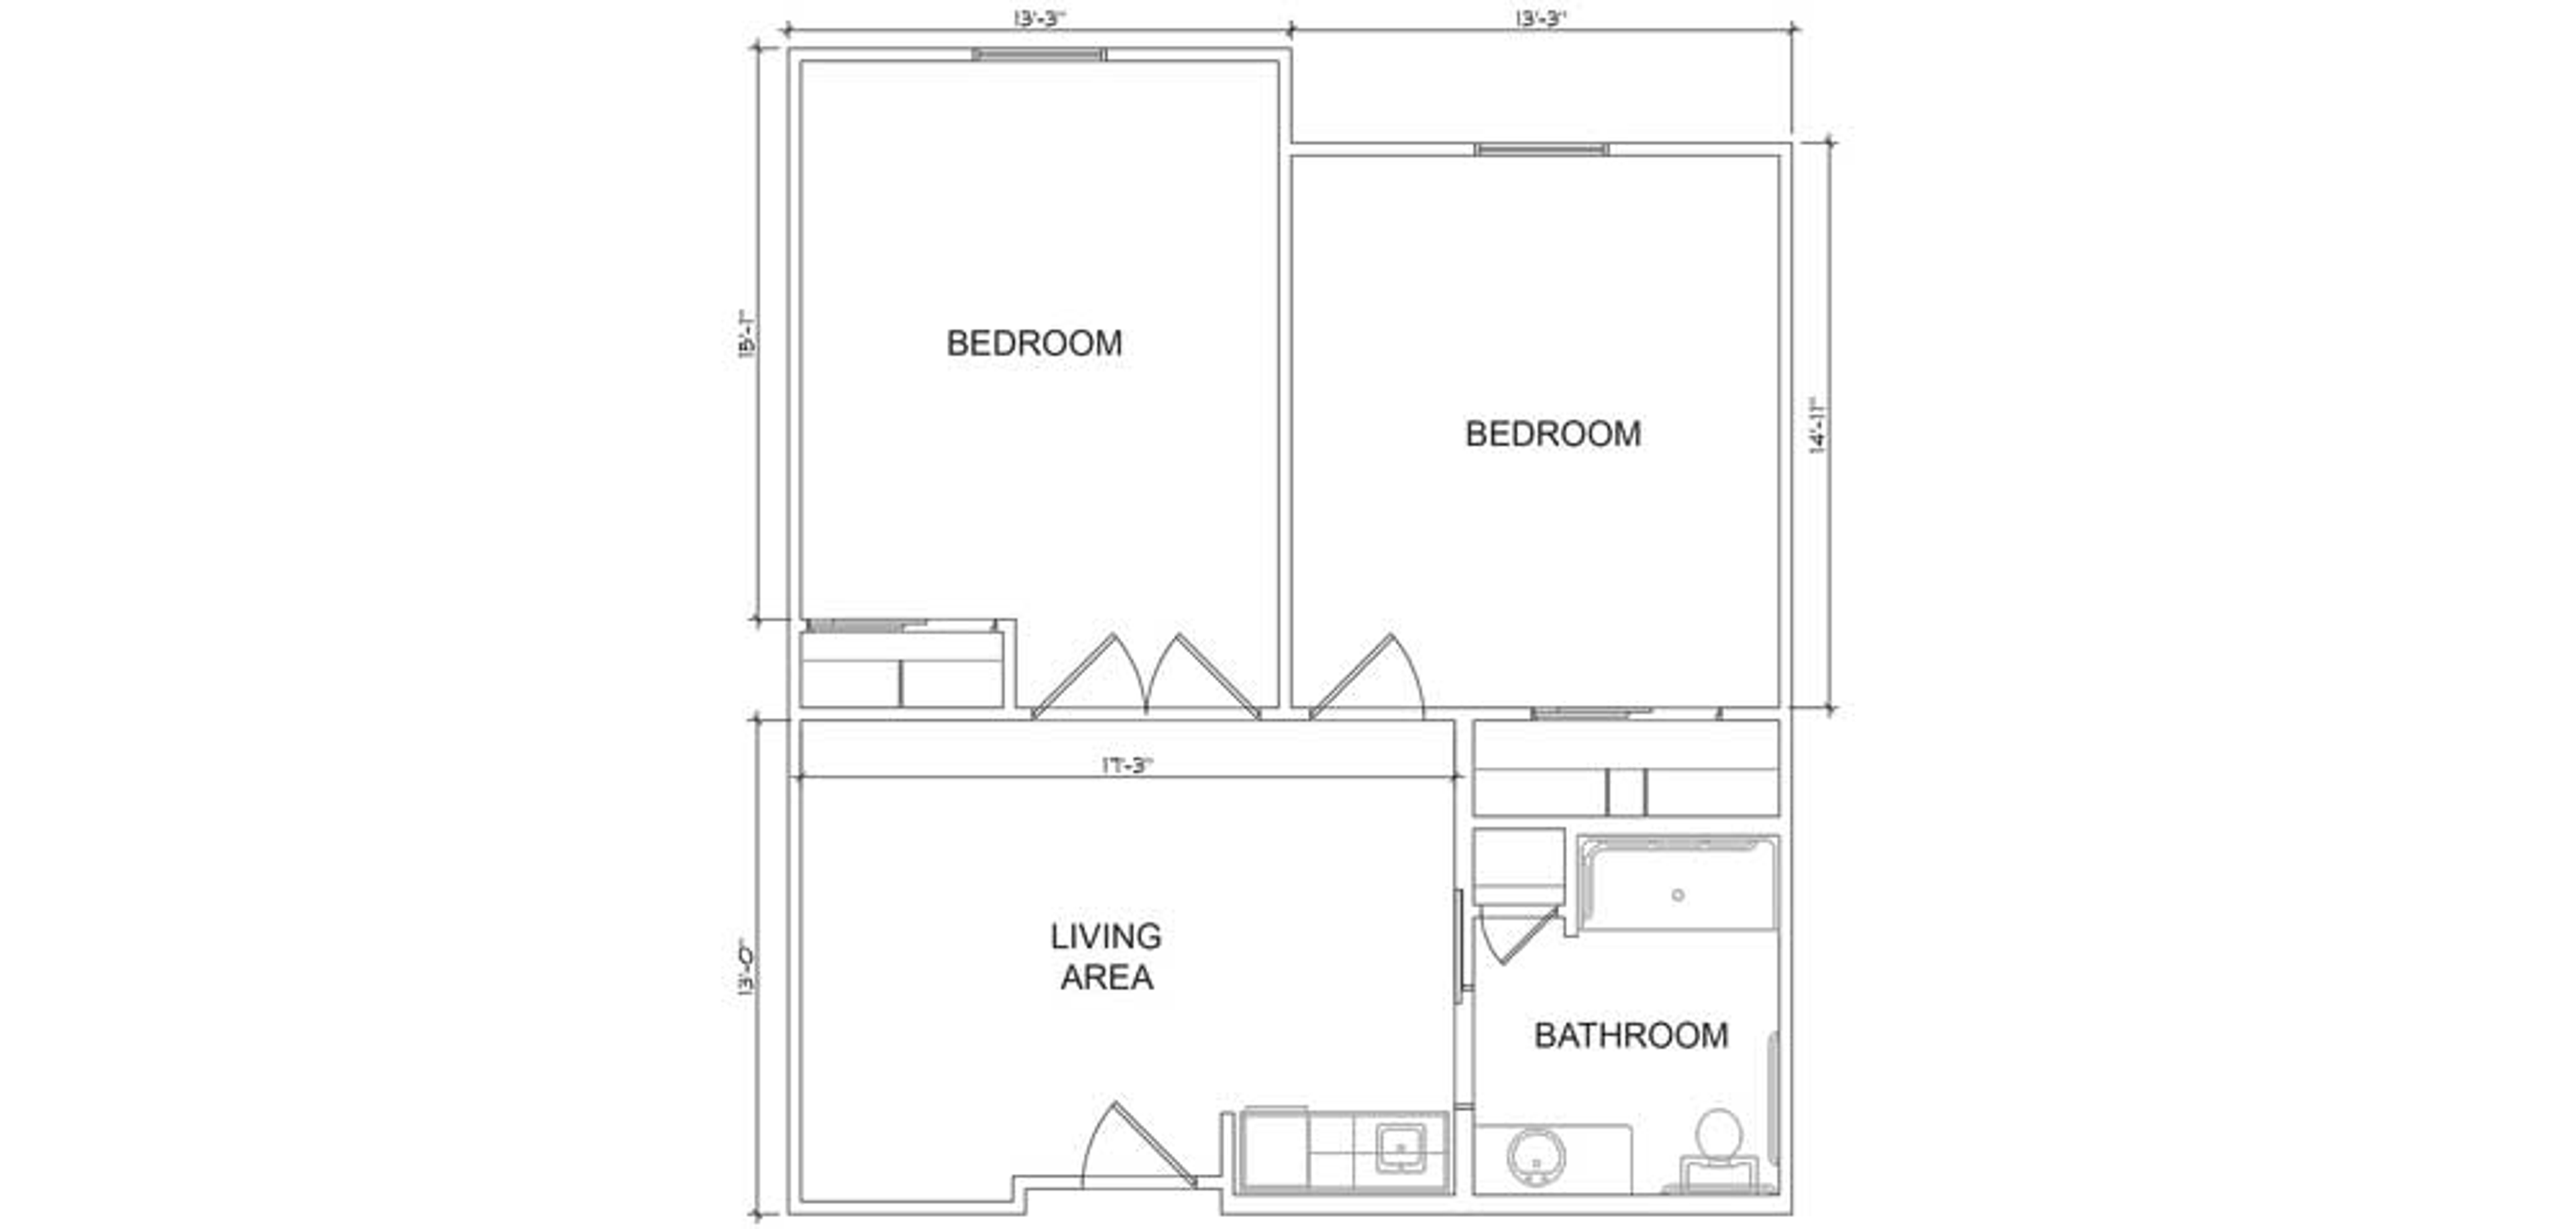 Floorplan - Heritage Oaks - 2B 1B Assisted Living